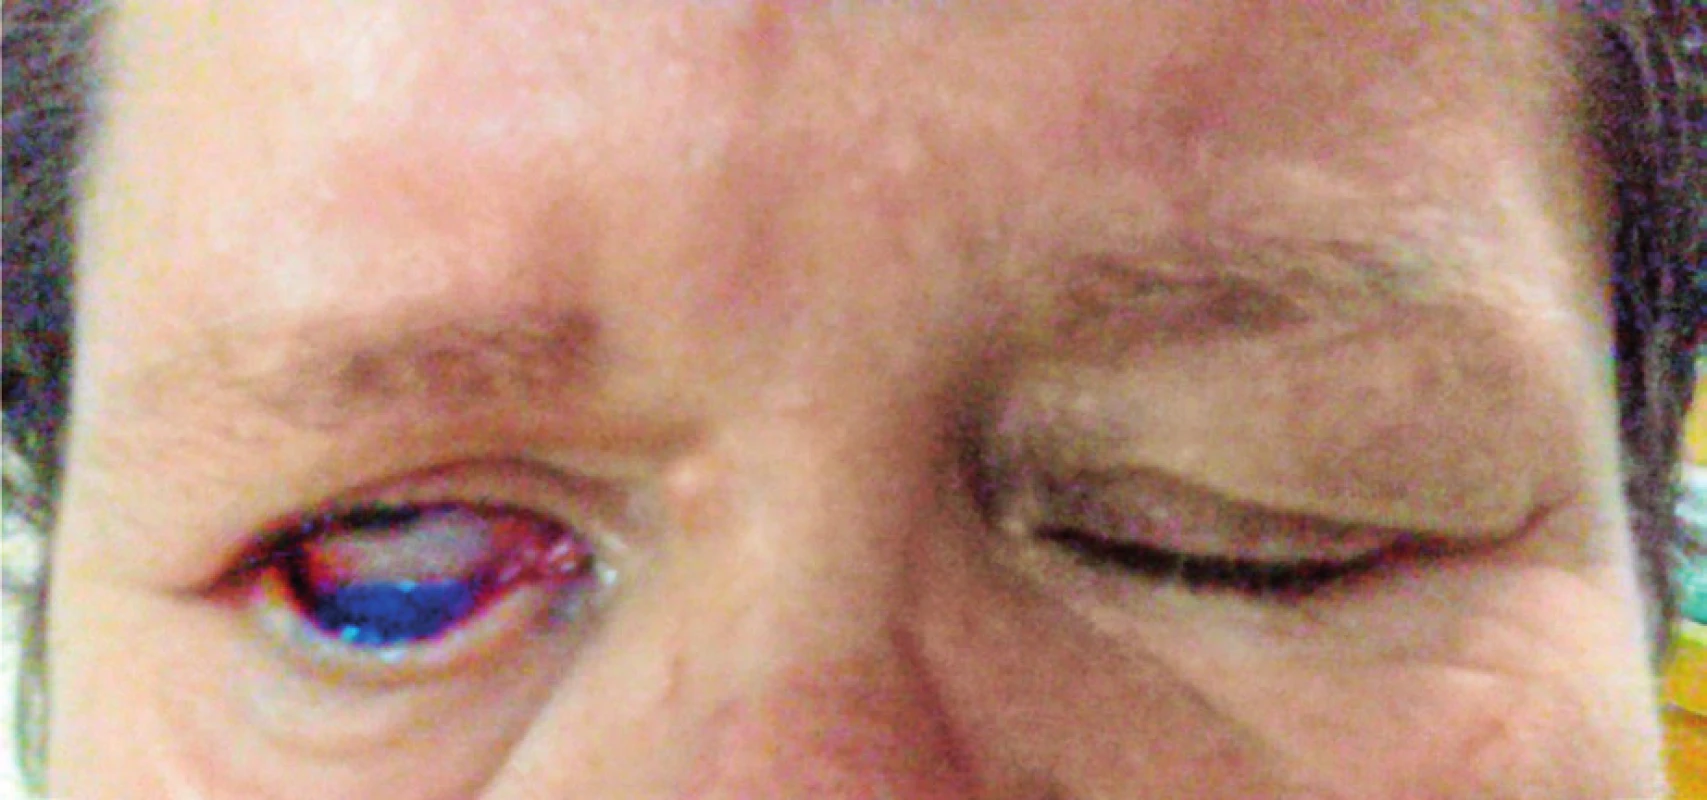 Očná štrbina pri uzávere pri maximálnom úsilí u pacientky s lagoftalmom. Nález zhoršuje výrazné ektropion dolného viečka.